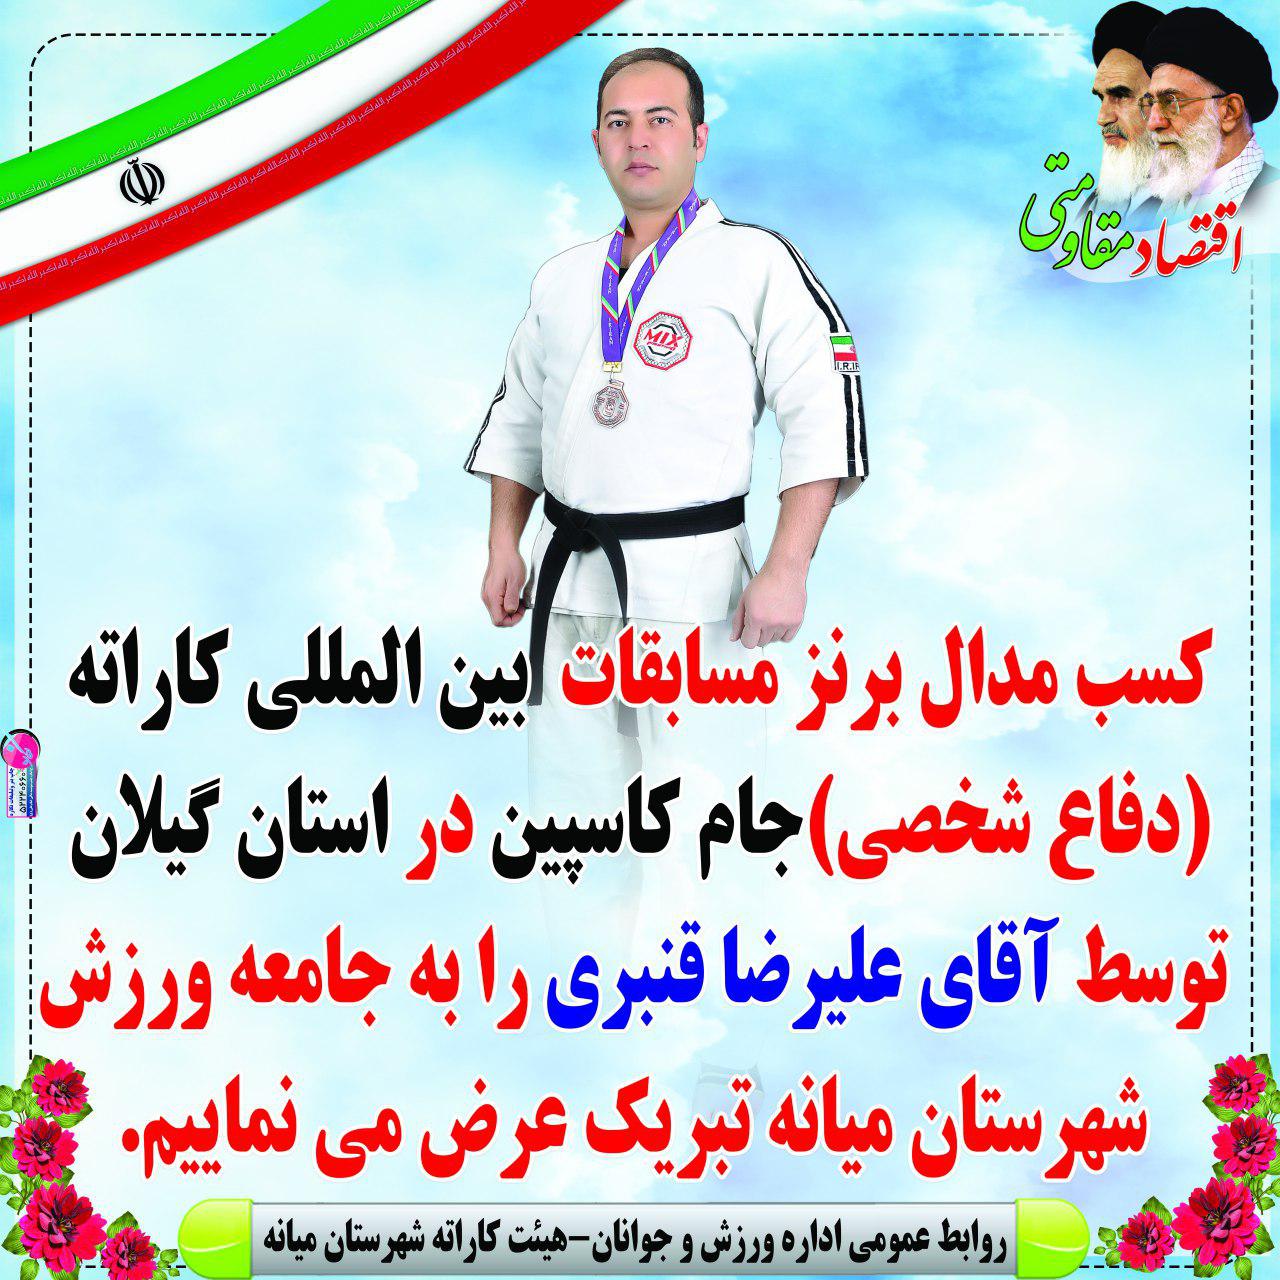 کسب مدال برنز مسابقات بین المللی کاراته جام کاسپین توسط استاد علیرضا قنبری قهرمان میانه ای